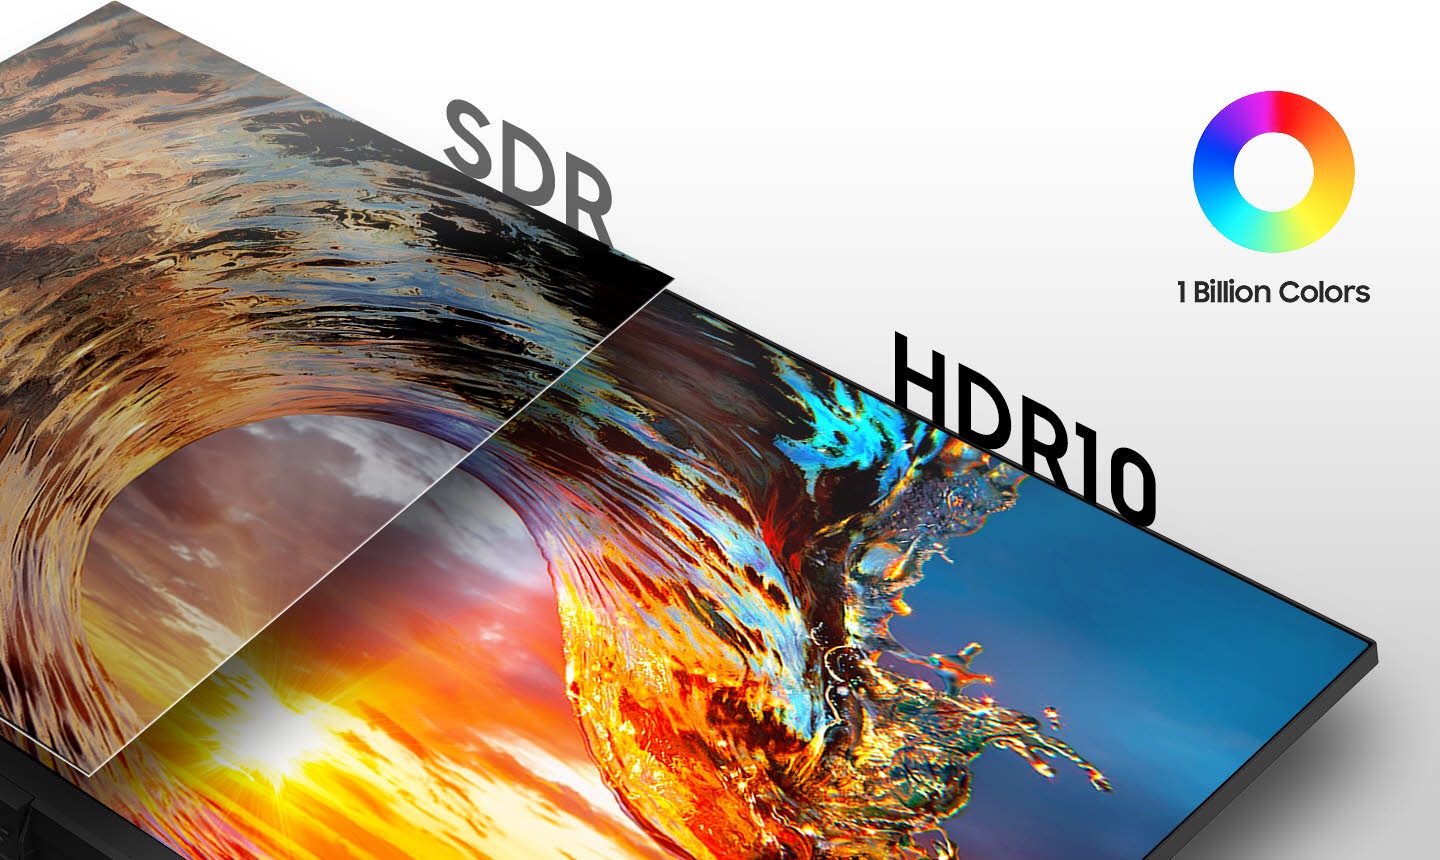 Comparando la pantalla SDR a la izquierda y la pantalla HDR10 a la derecha, hay un ícono de mil millones de colores en la parte superior derecha.